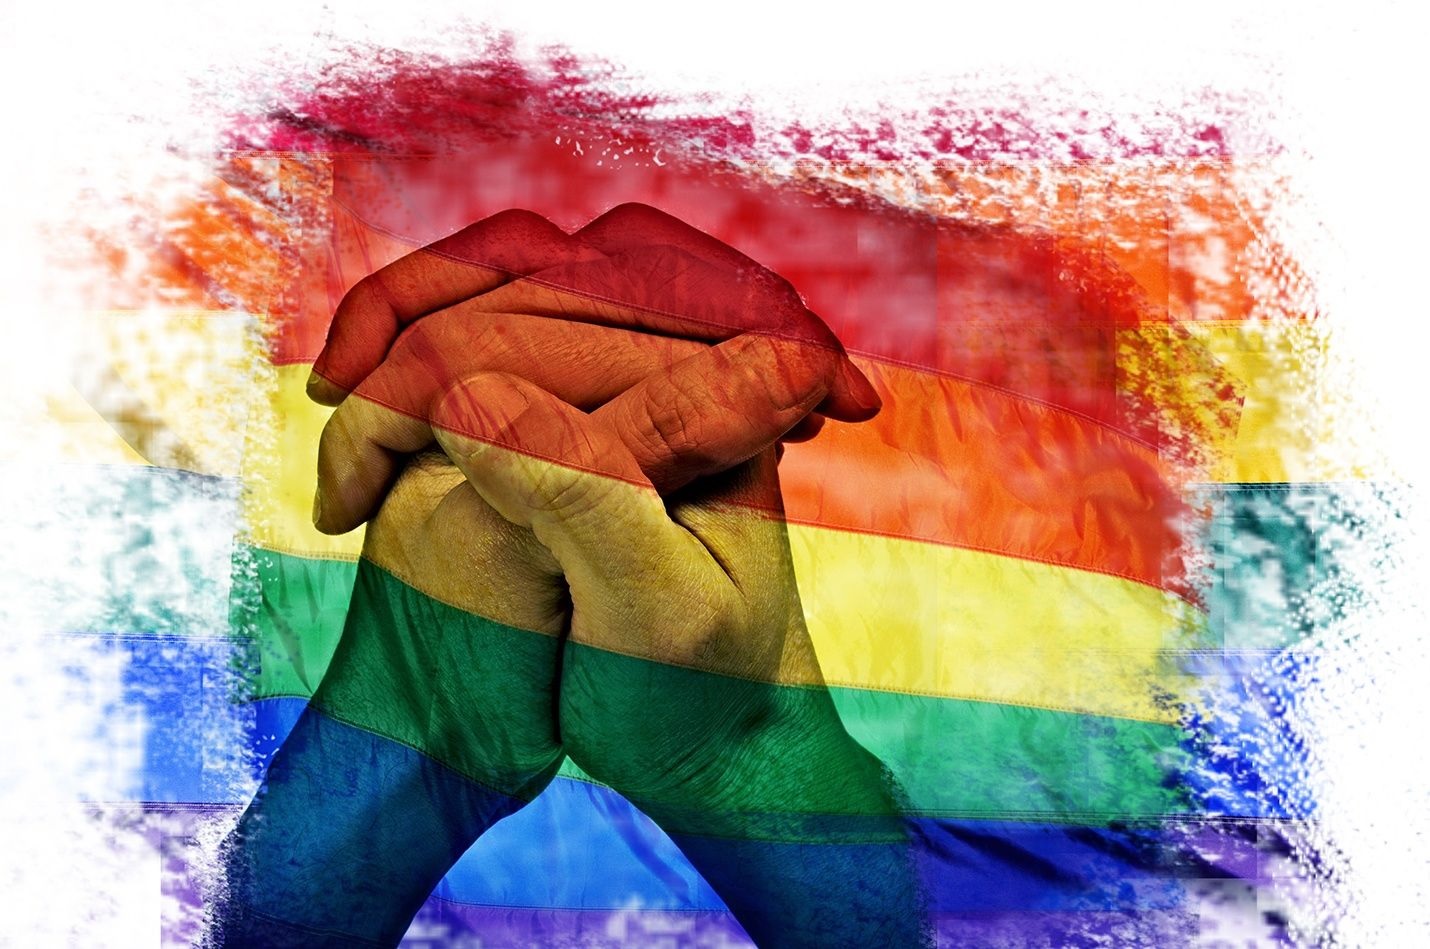 hiểu về cộng đồng LGBT: Có một sự đa dạng về tình dục và giới tính trong cộng đồng LGBT. Họ đang cùng nhau chiến đấu để được đối xử công bằng và tôn trọng như bất kì ai khác trong xã hội. Để hiểu thêm về cộng đồng này, hãy đón xem những hình ảnh thú vị về cuộc sống của họ.